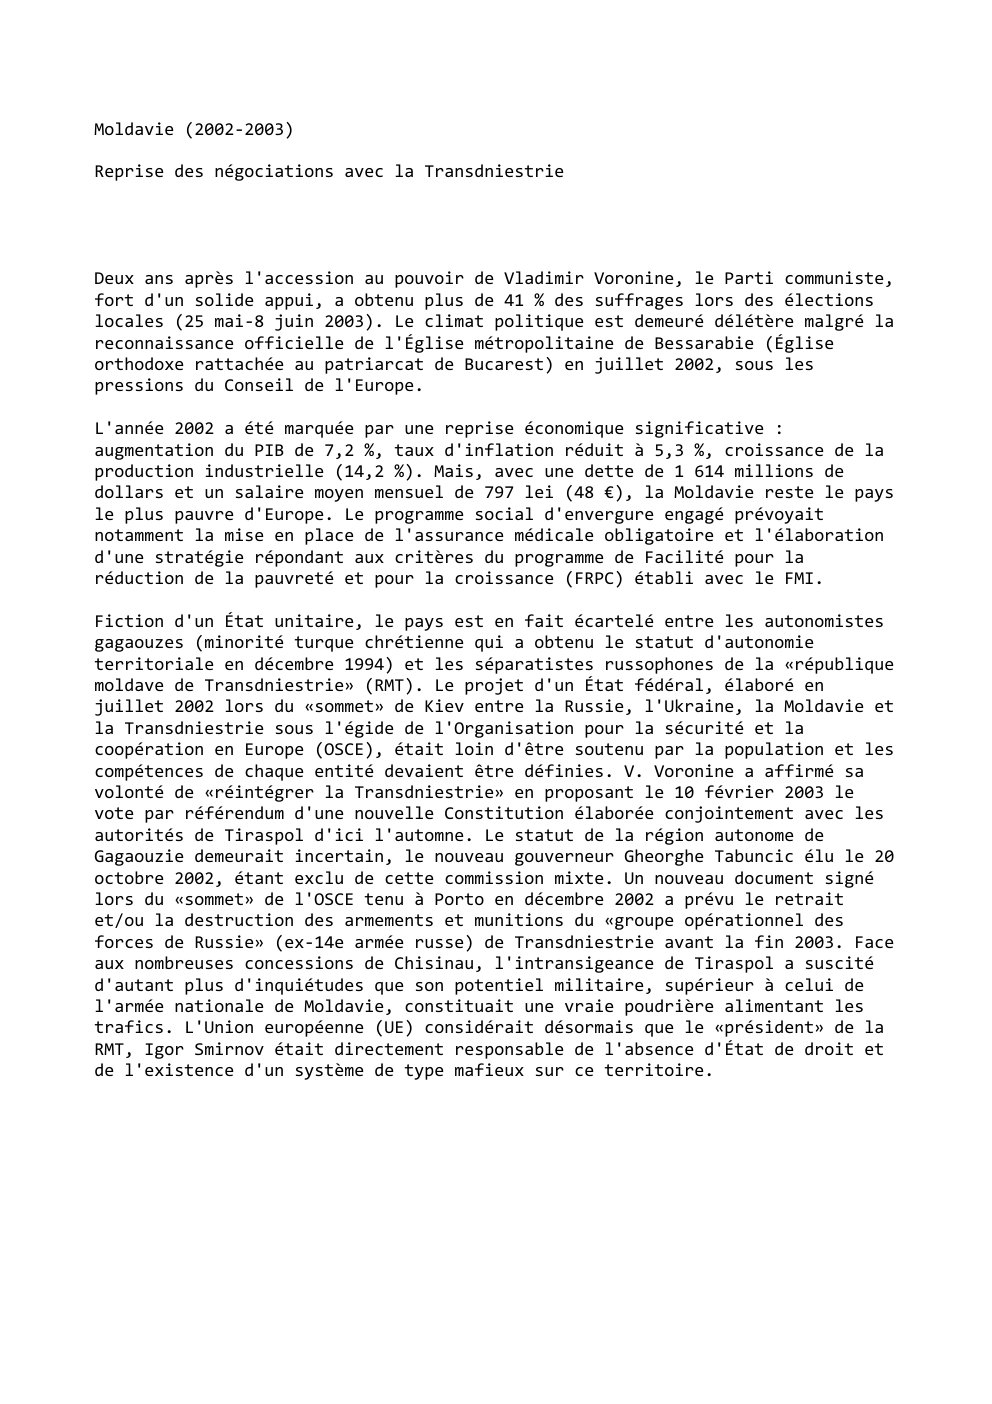 Prévisualisation du document Moldavie (2002-2003)
Reprise des négociations avec la Transdniestrie

Deux ans après l'accession au pouvoir de Vladimir Voronine, le Parti communiste,...